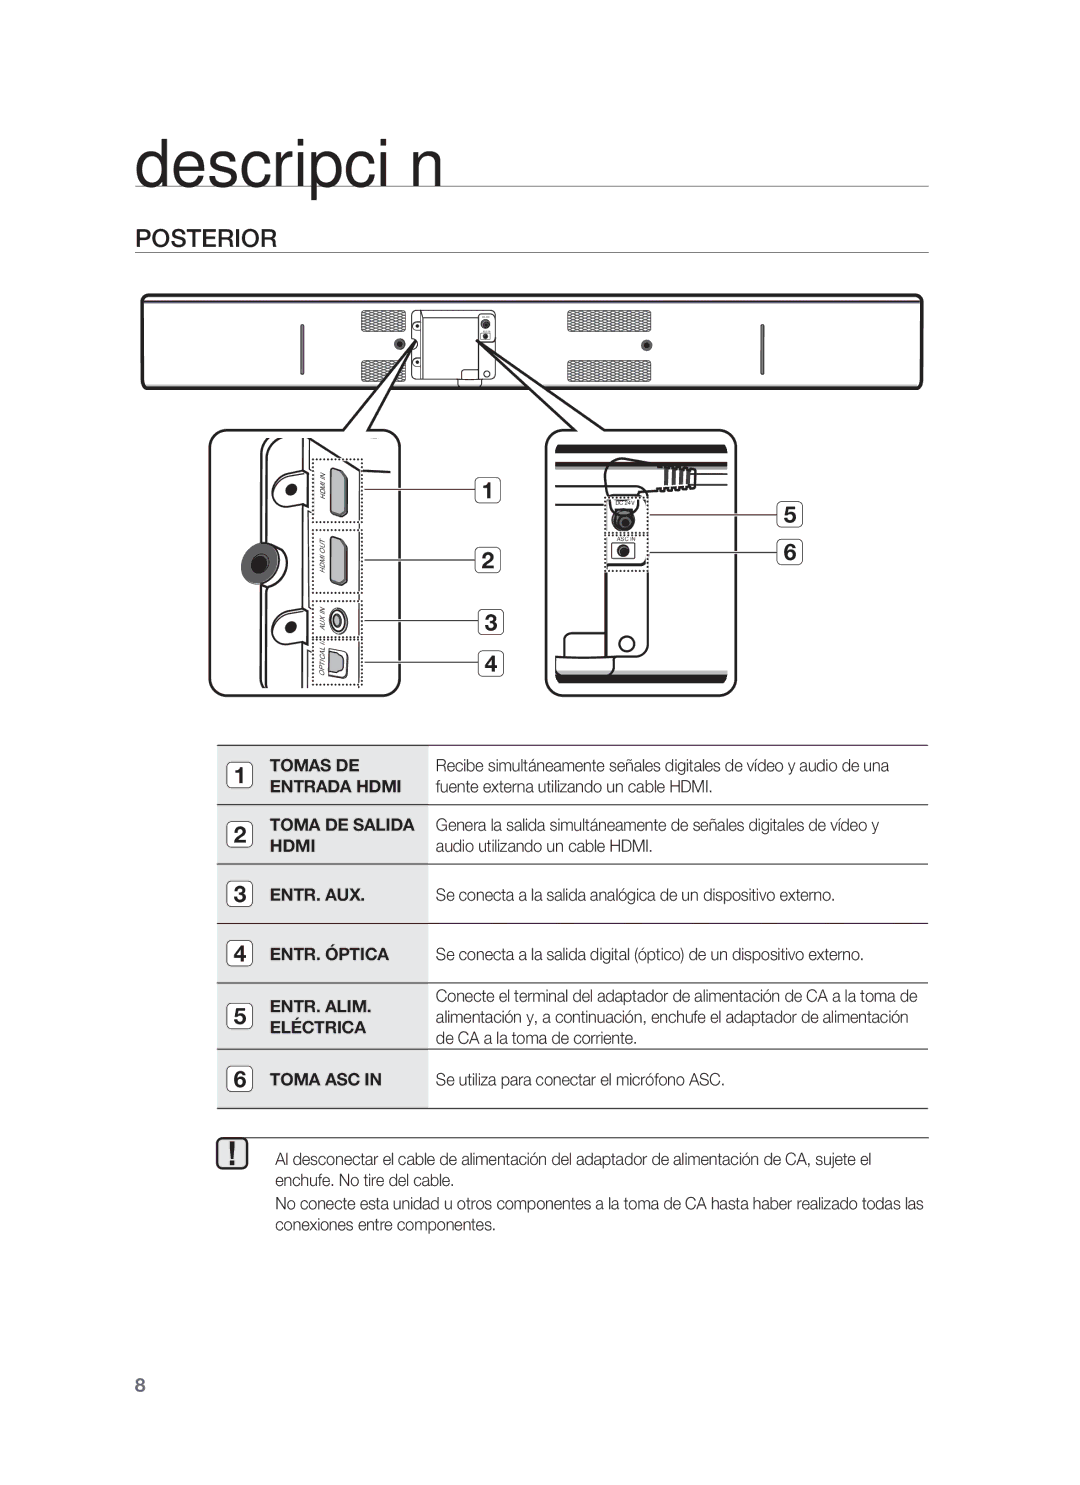 Samsung HW-F850/ZF manual Posterior, Tomas DE, Entrada Hdmi, Fuente externa utilizando un cable Hdmi, ENTR. Alim 